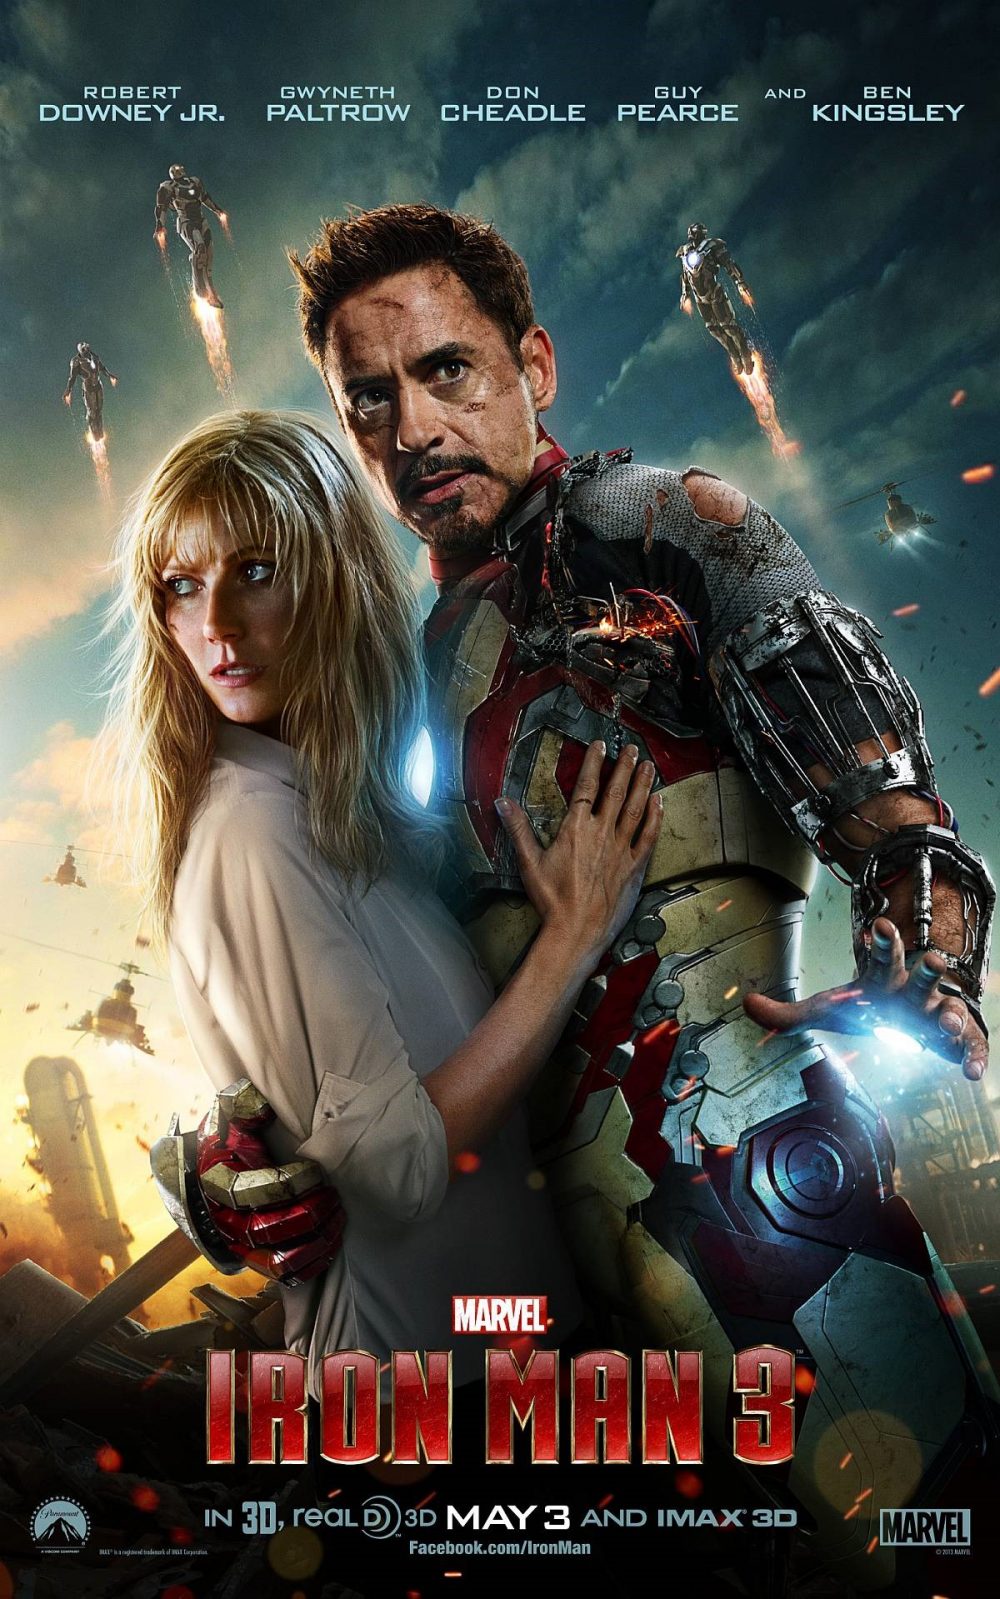 Poster chinh thuc cua phim iron man 3 e1590759534863 - Iron man 3: Khi những bộ giáp không còn là số một